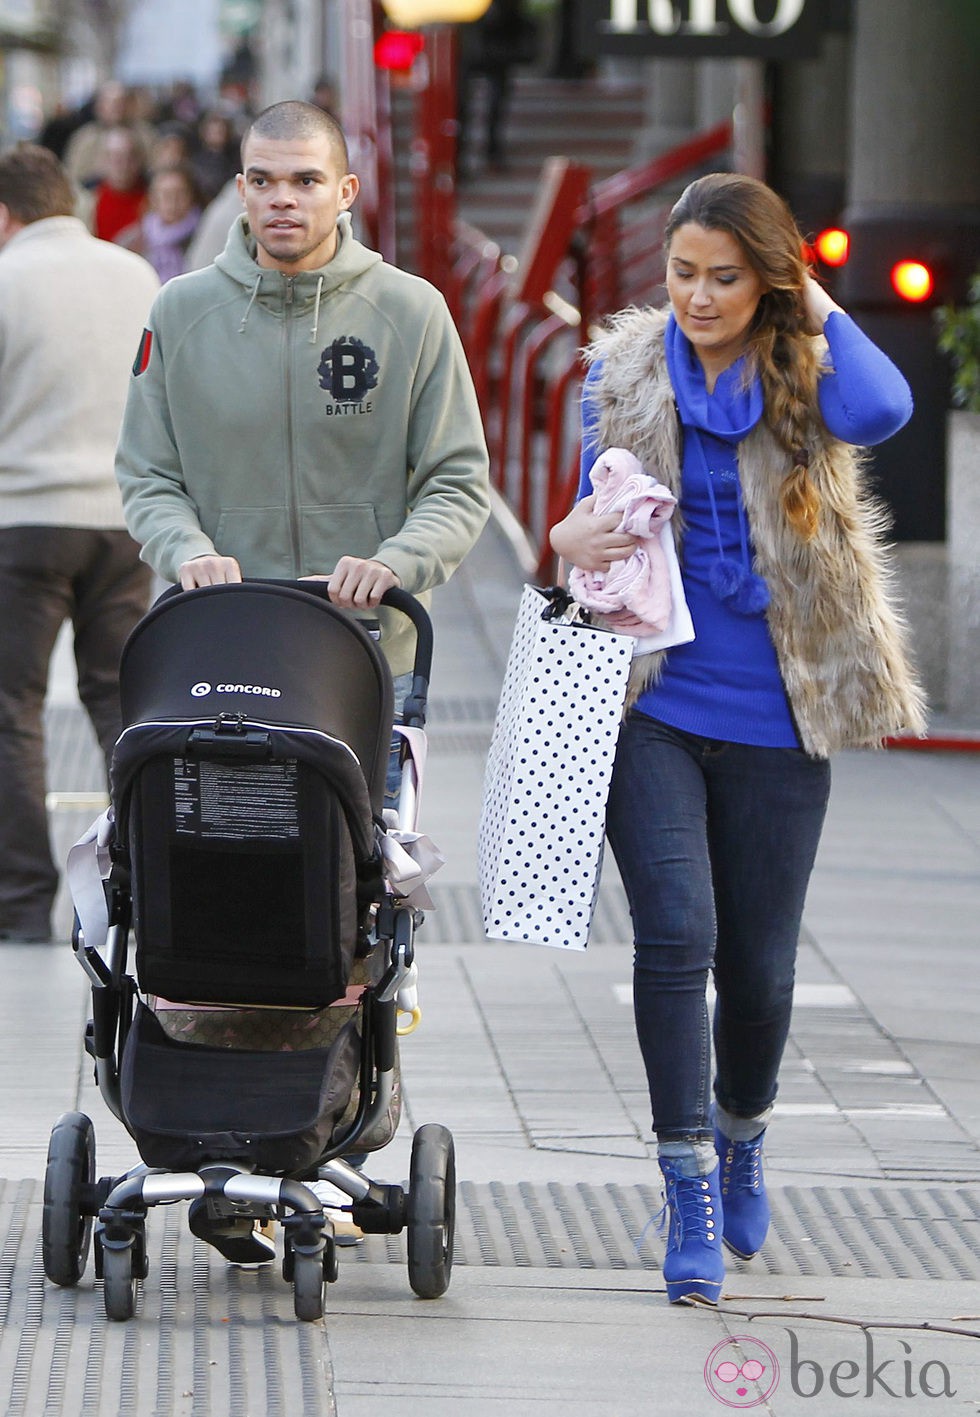 Pepe y Ana Sofía Moreira paseando con su hija Angeli por Madrid